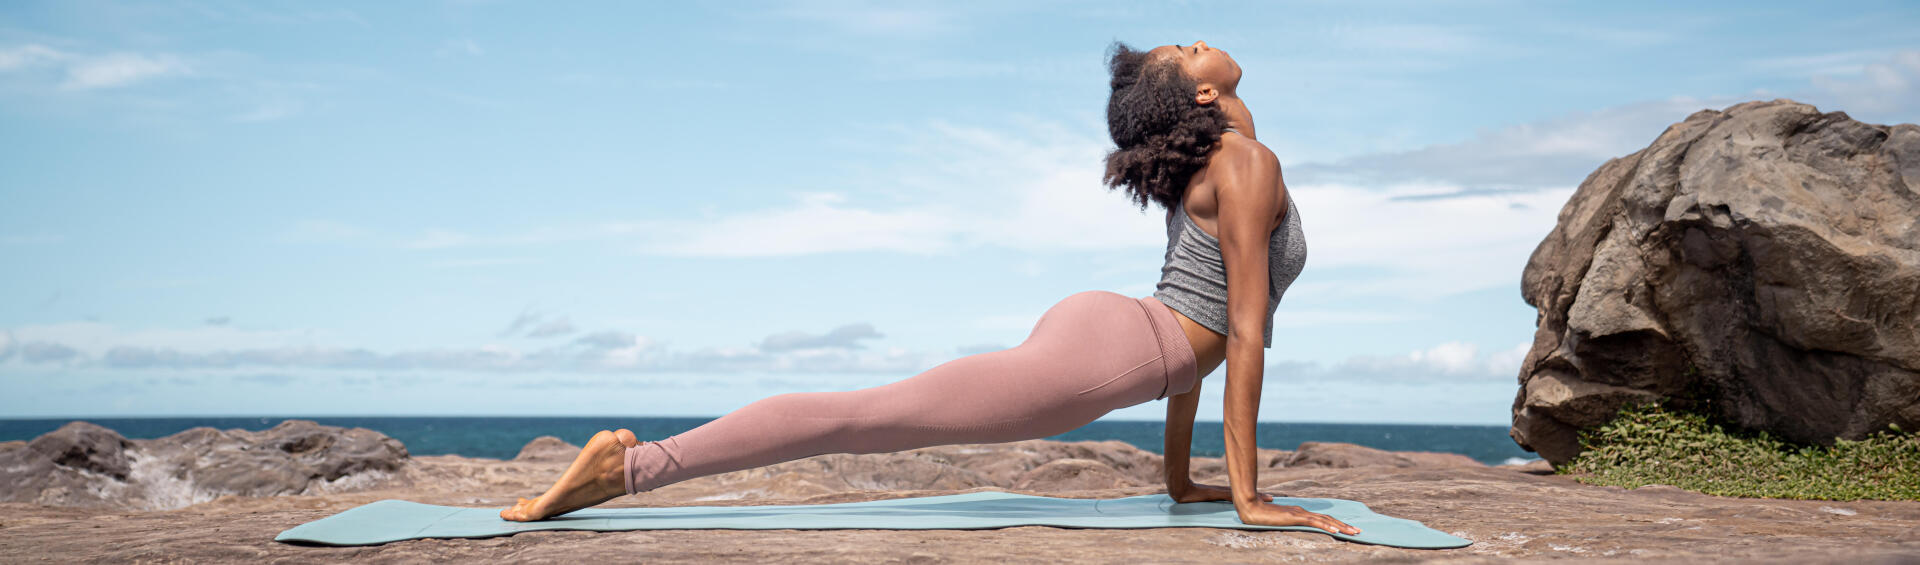 5 Dias de Desafio - Introdução ao Yoga: Dia 2 - Abertura e Calma